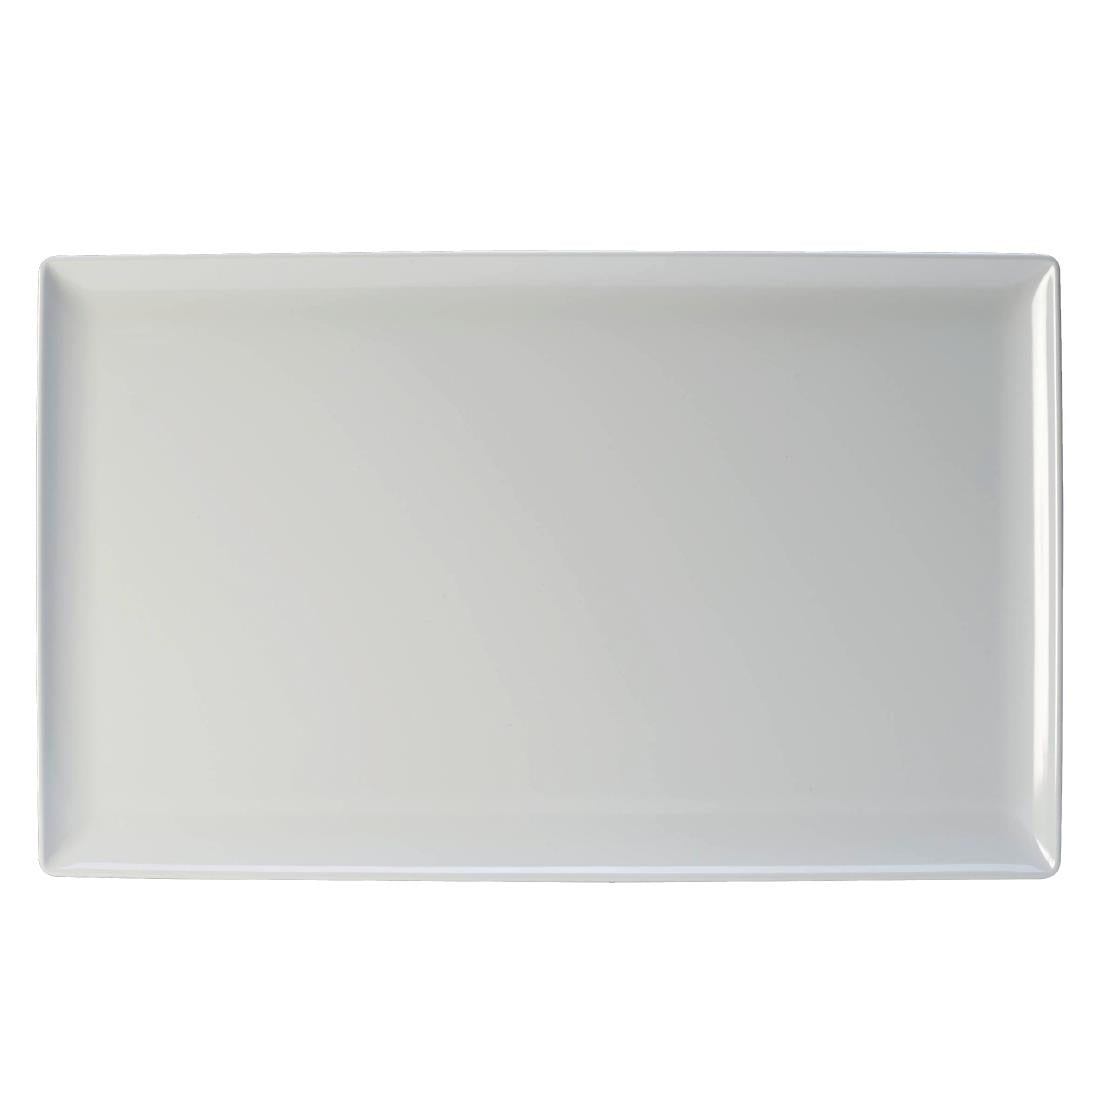 VV457 Steelite Craft Melamine Rectangular Platter White GN 1/1